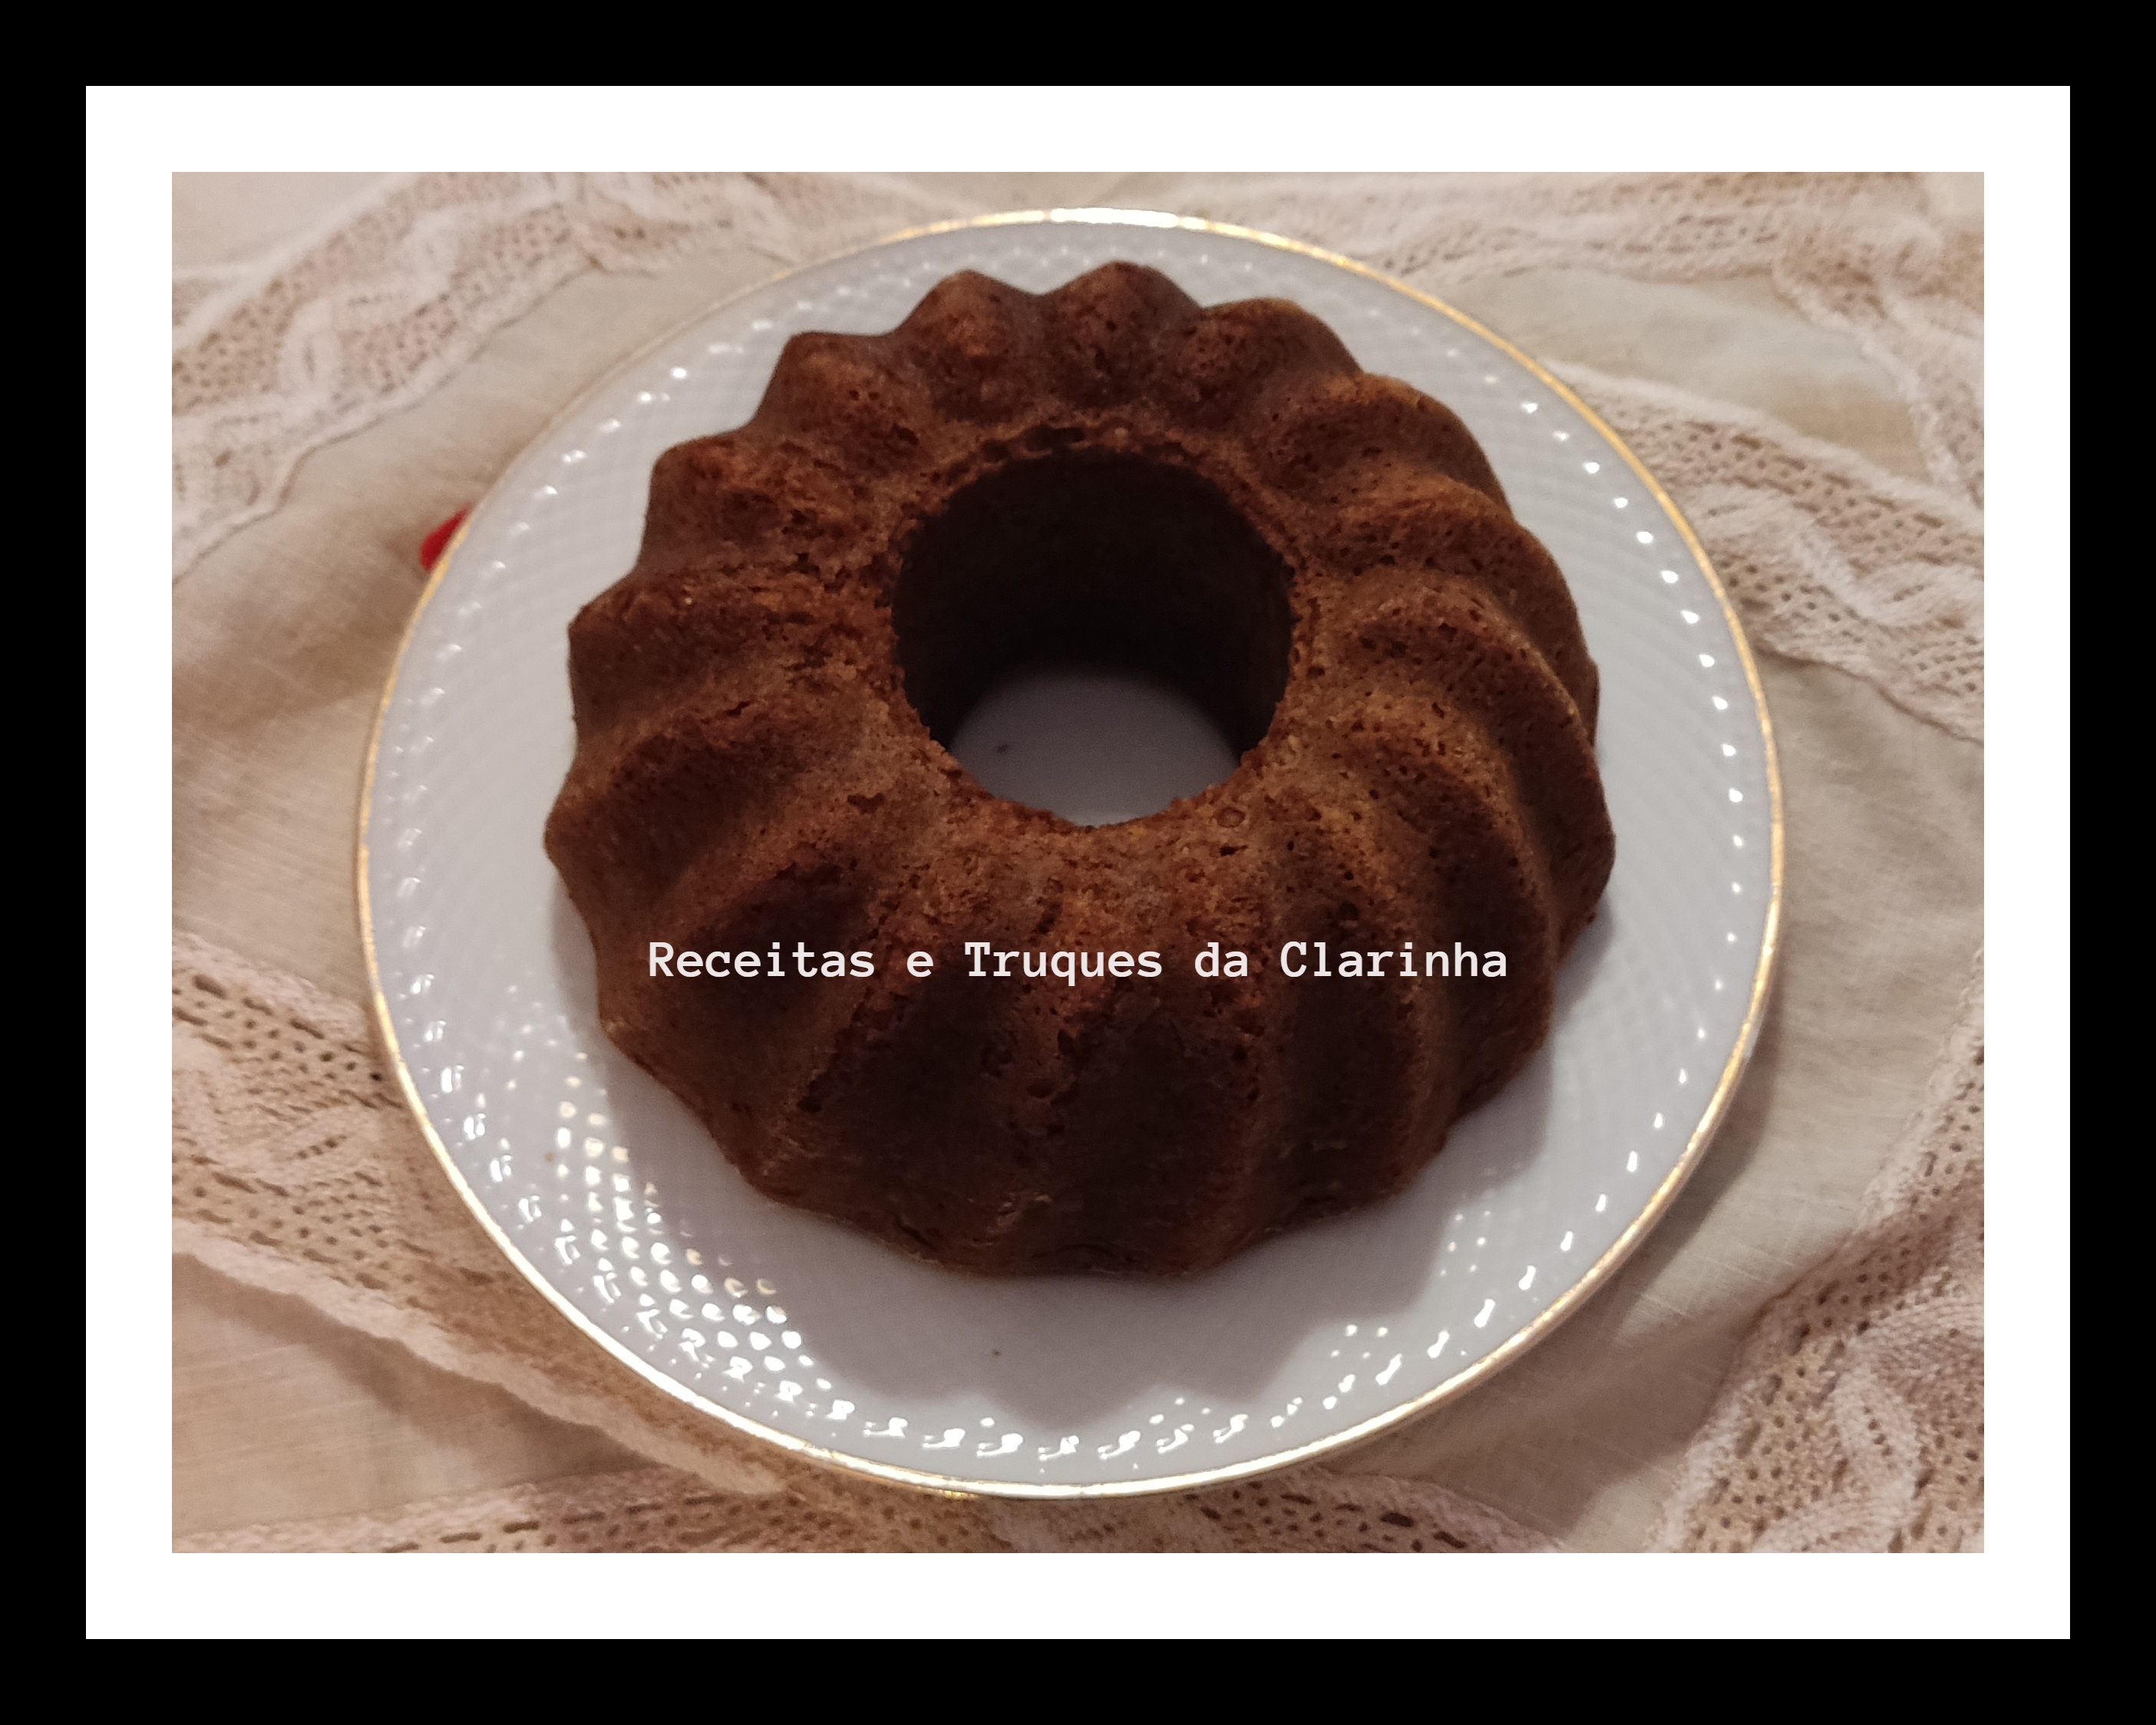 Bolo de chocolate e trigo sarraceno crocante - Cookidoo® – the